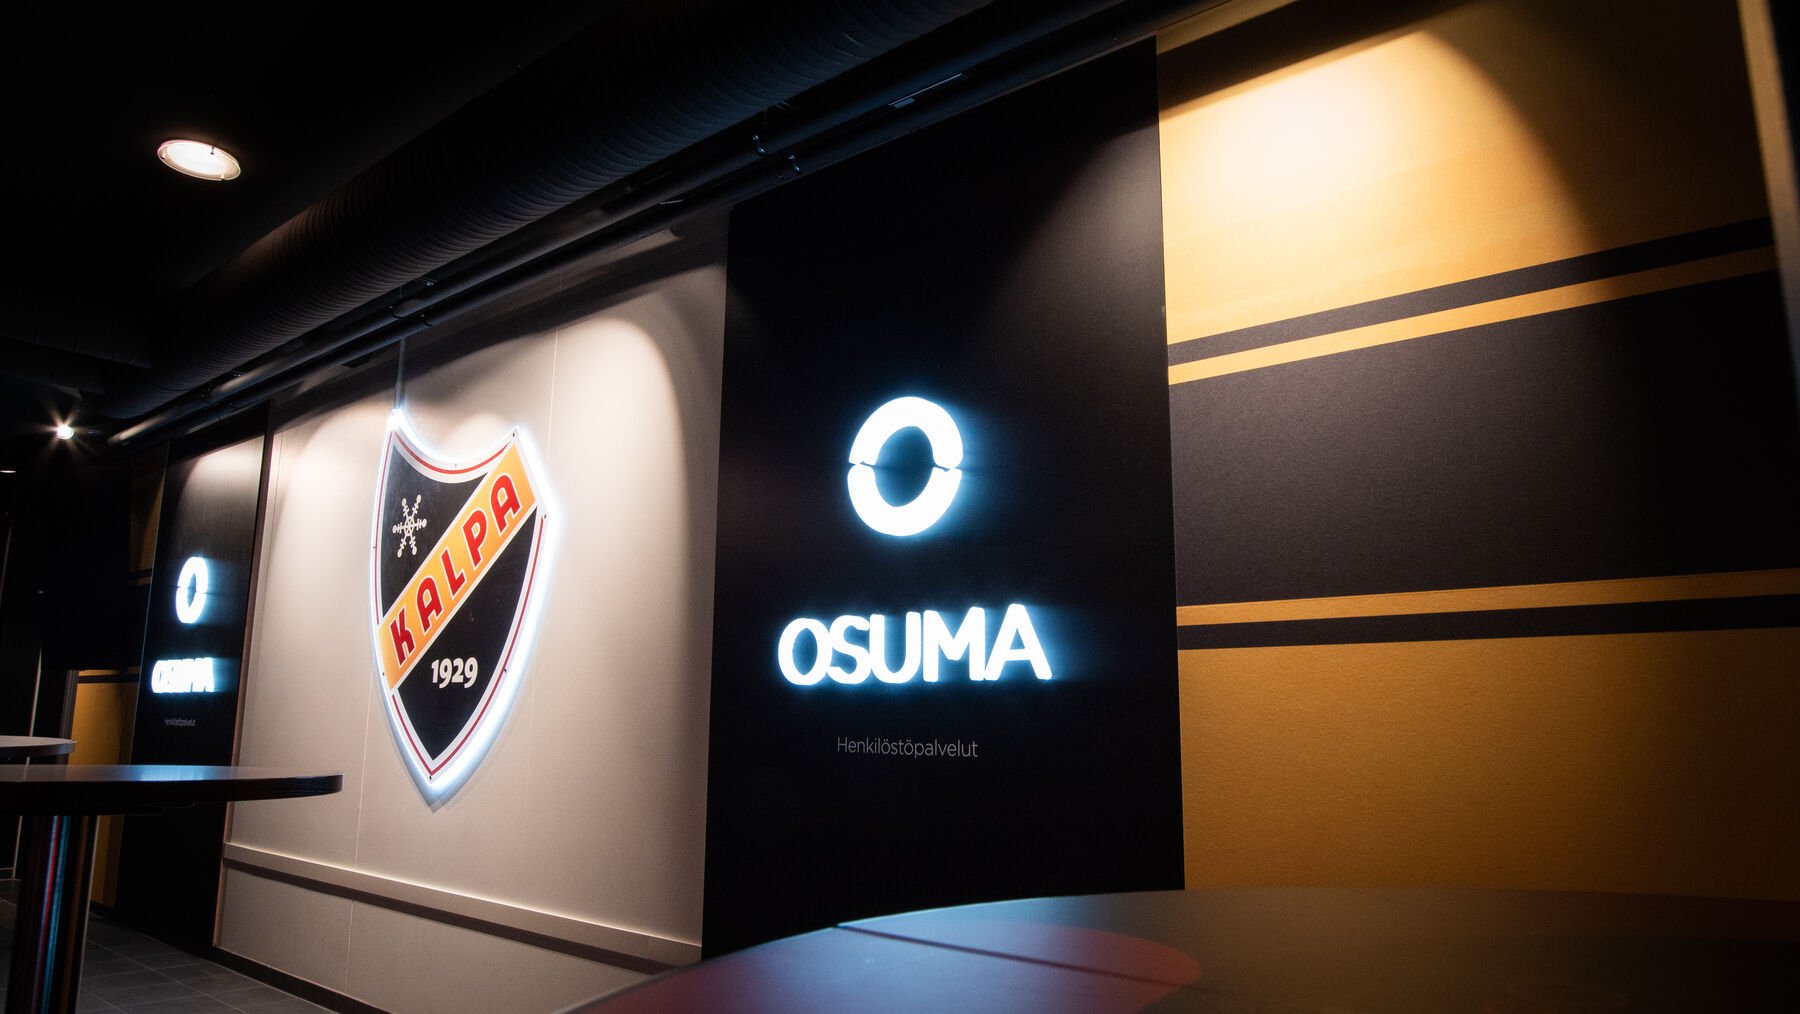 Grano toteutti Osuma-klubille mm. taustavalaistut KalPa-logot sekä leditekniikalla toteutetut neonvaloja muistuttavat elementit. 